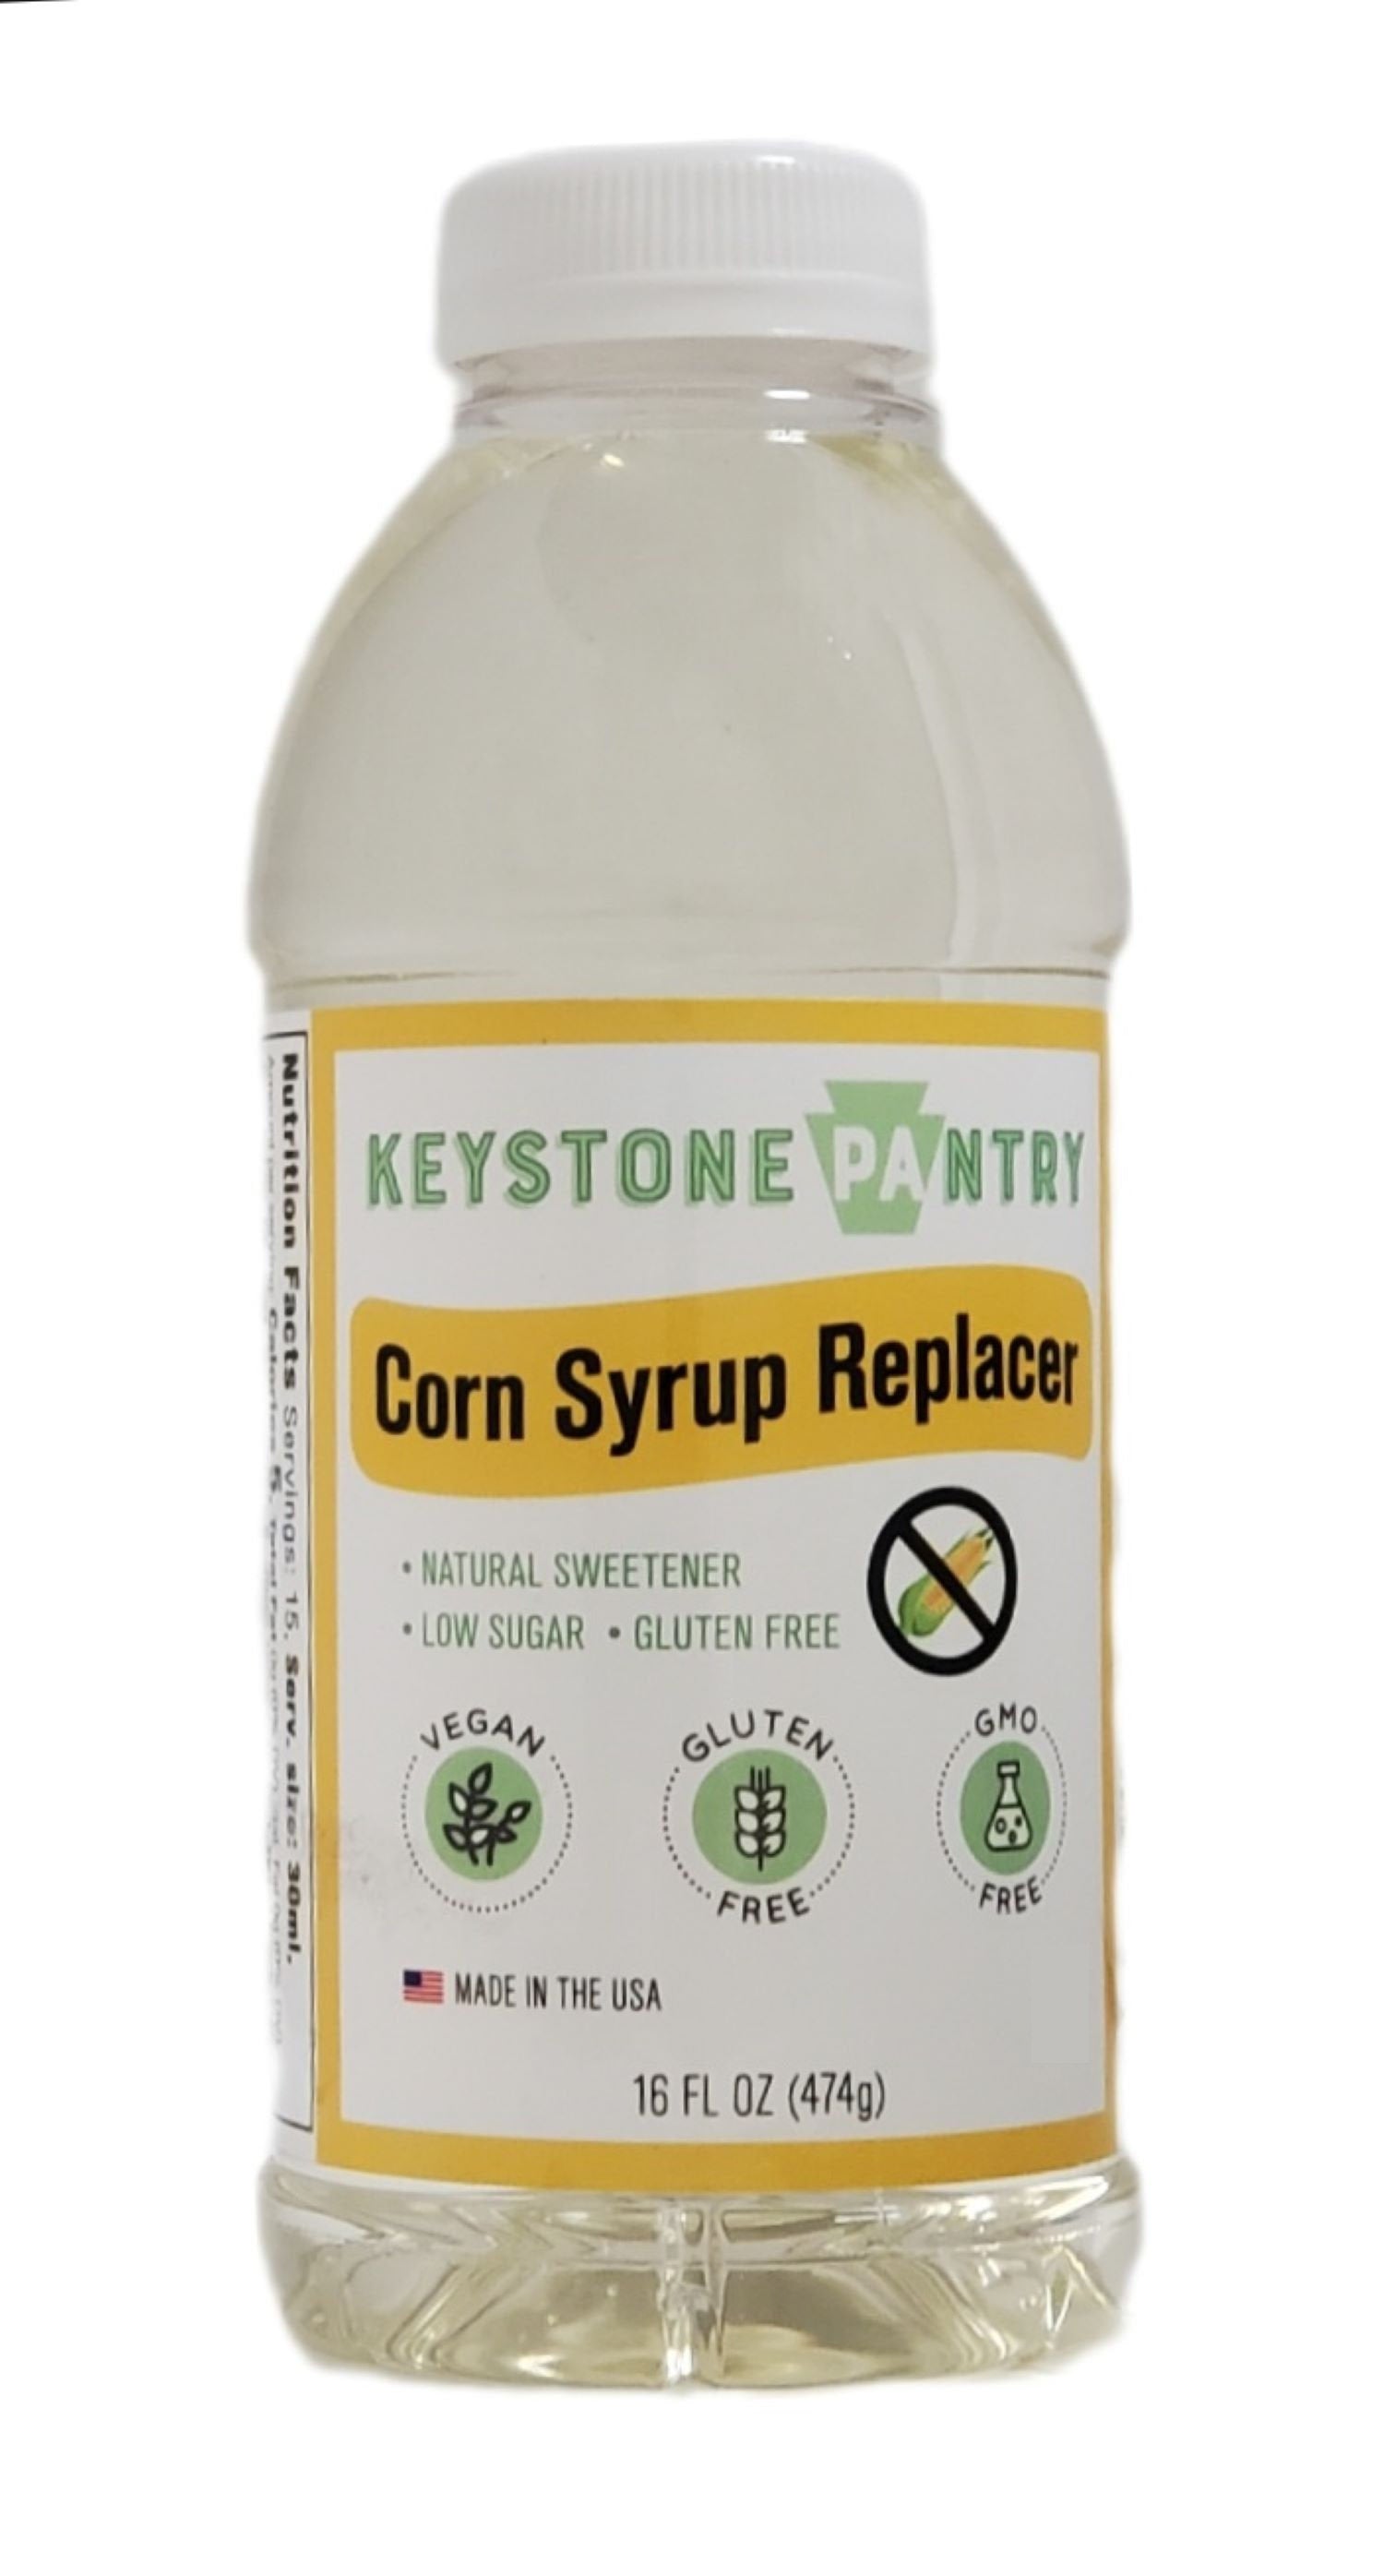 Keystone Pantry Corn Syrup Replacer 1 pint bottle Vegan/Kosher-Parve